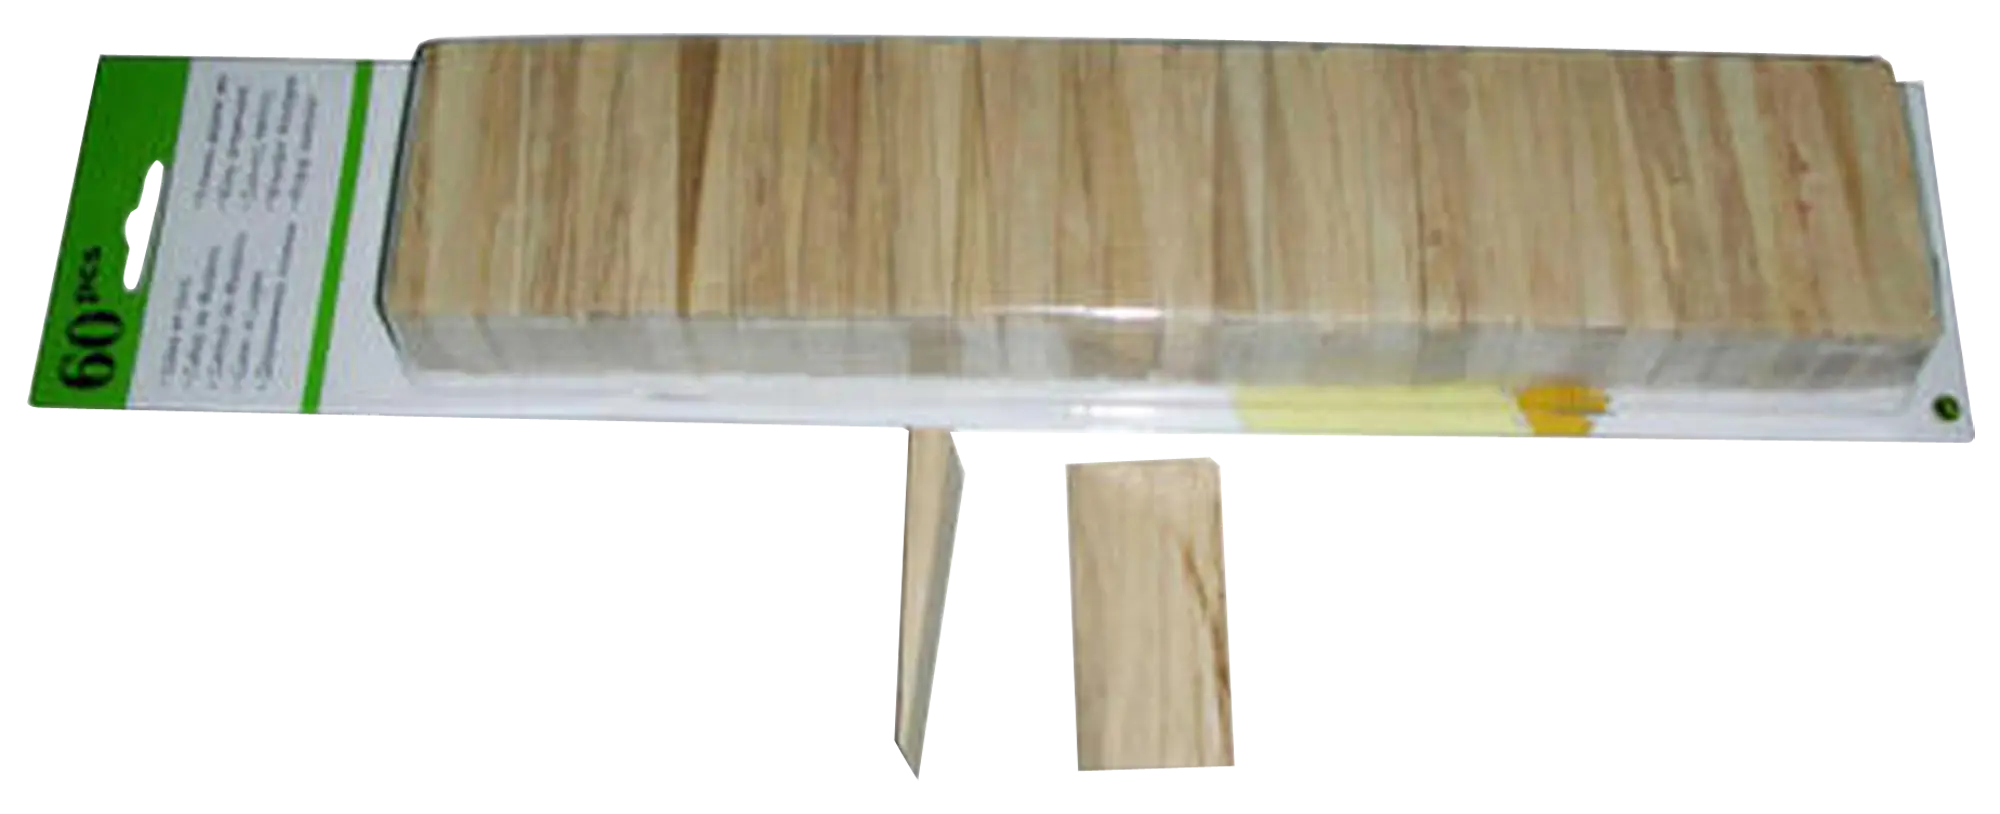 Pack 60 de madera para instalación de suelo laminado o de madera | Leroy Merlin